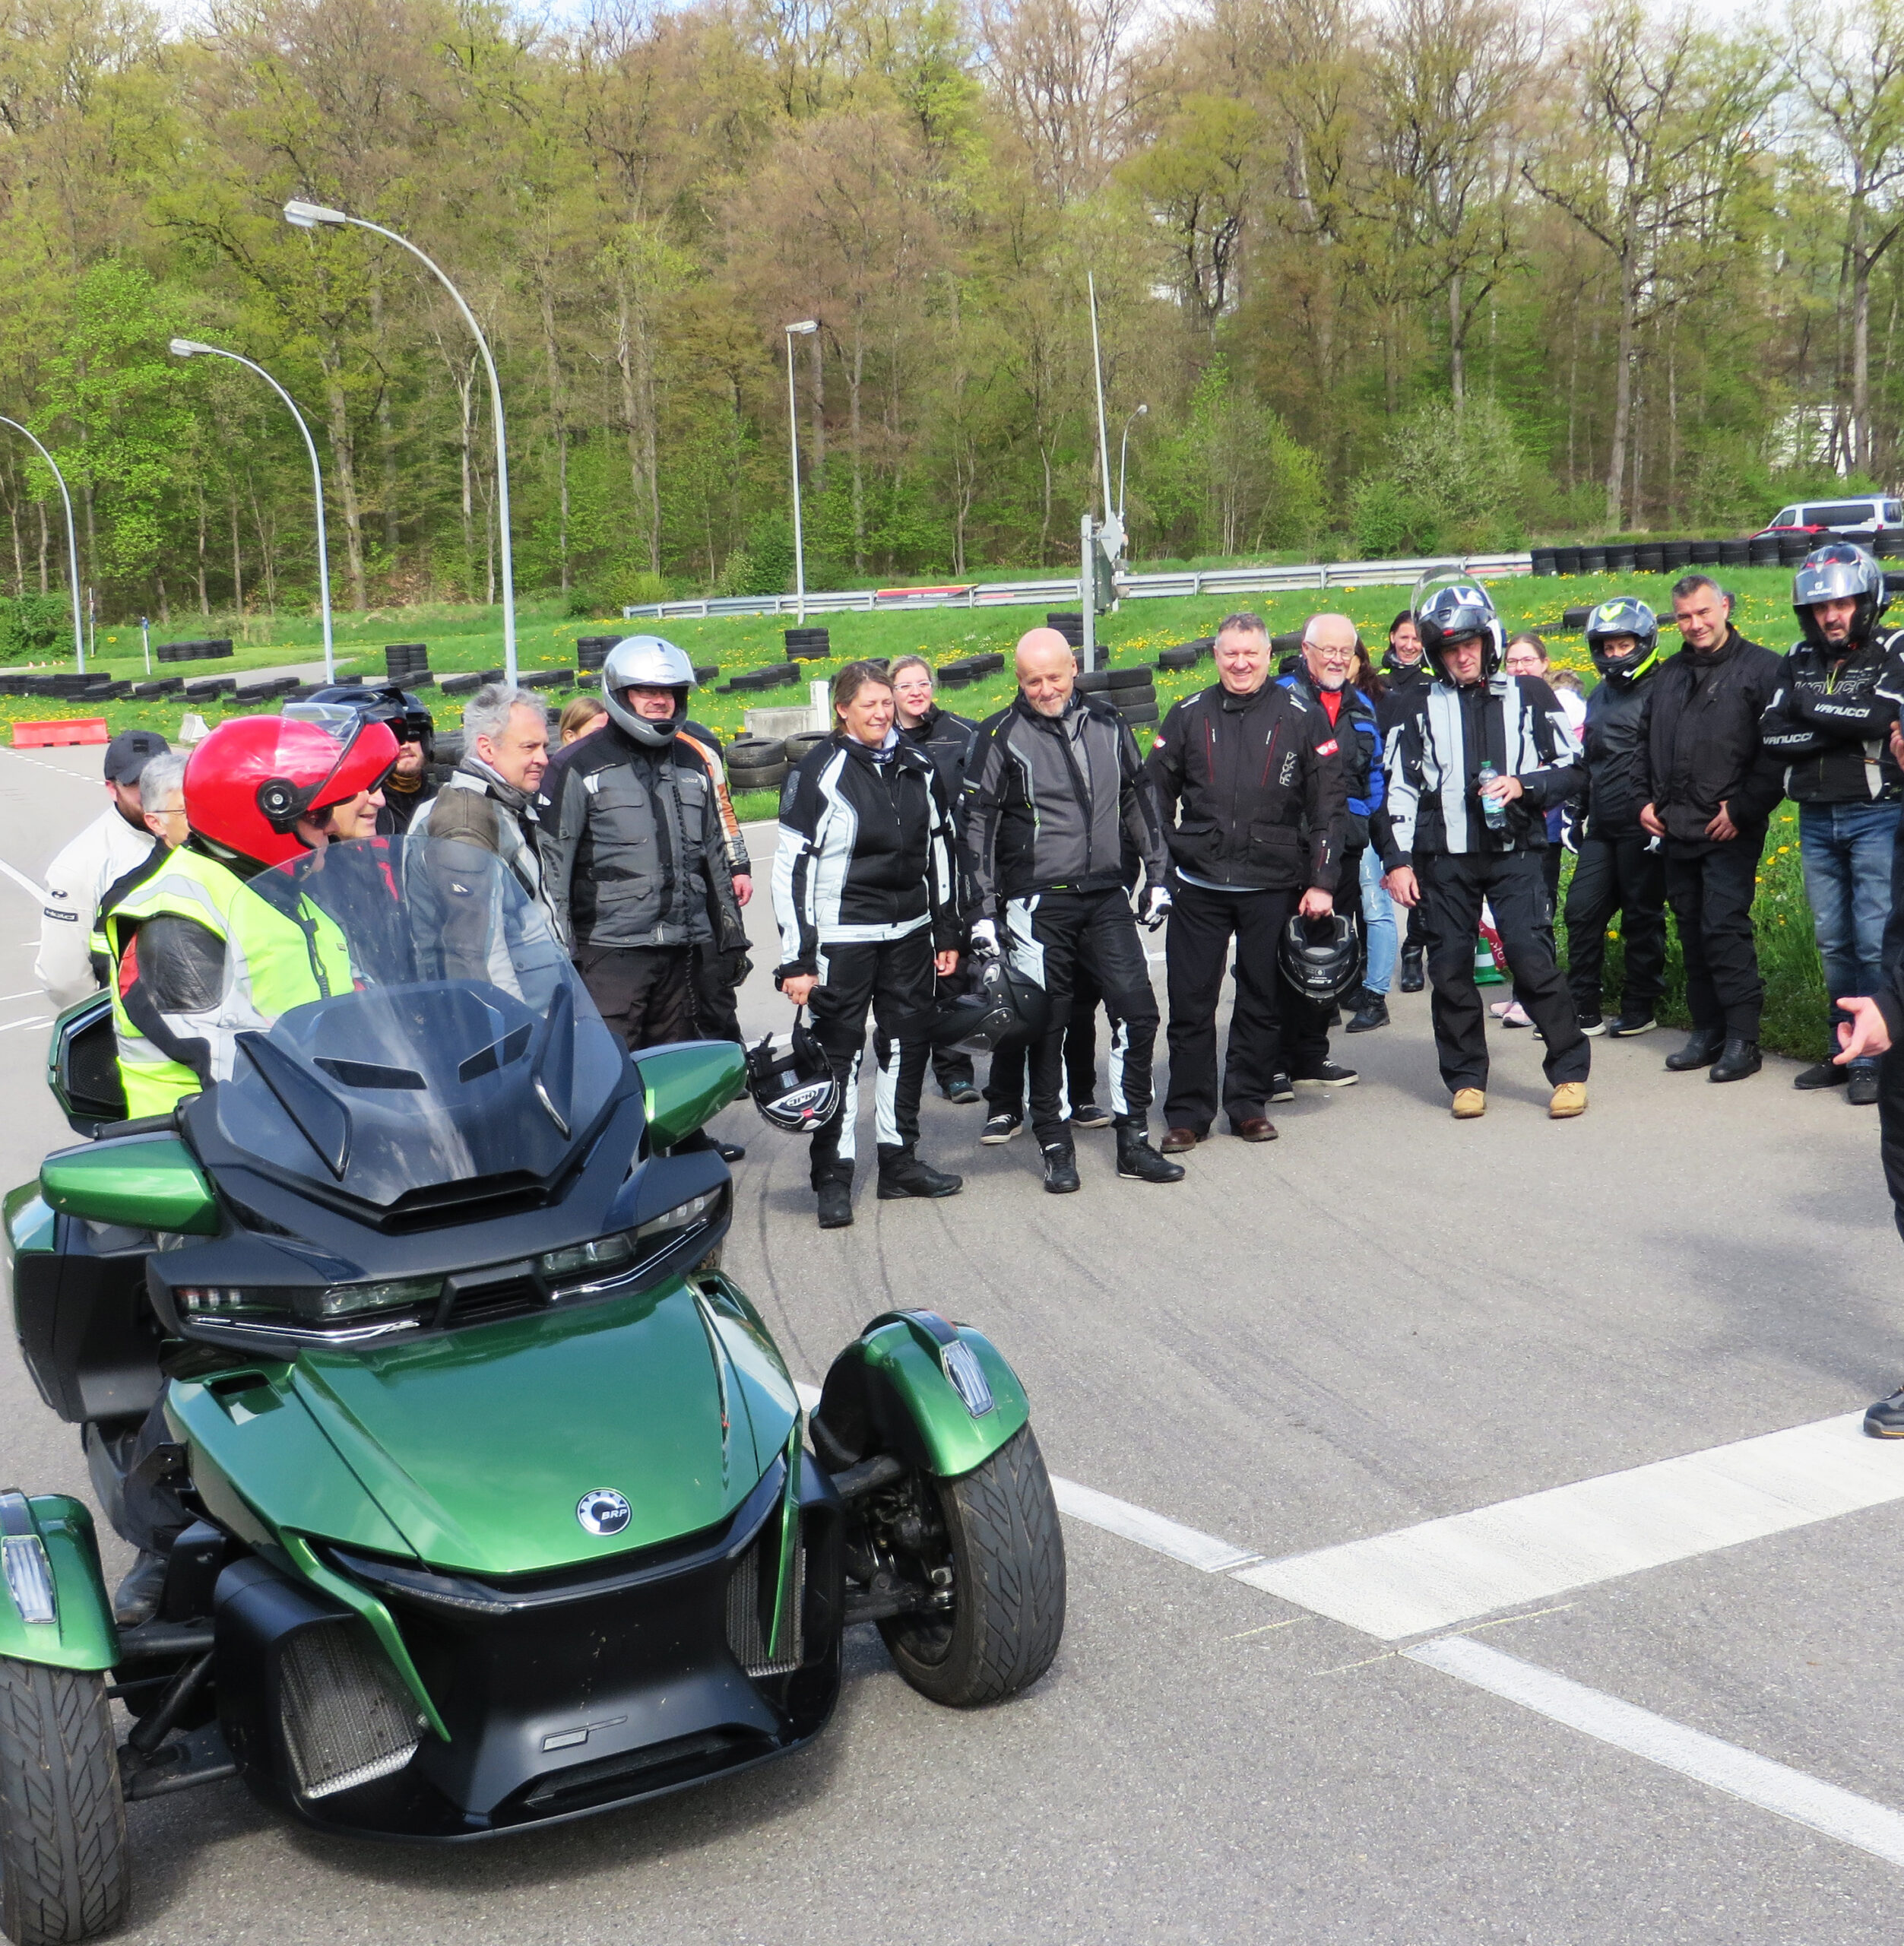 Eine Ausfahrt des Spyker & Ryker Clubs auf eine Rennstrecke mit vielen Teilnehmenden bei der Einweisung zur Strecke